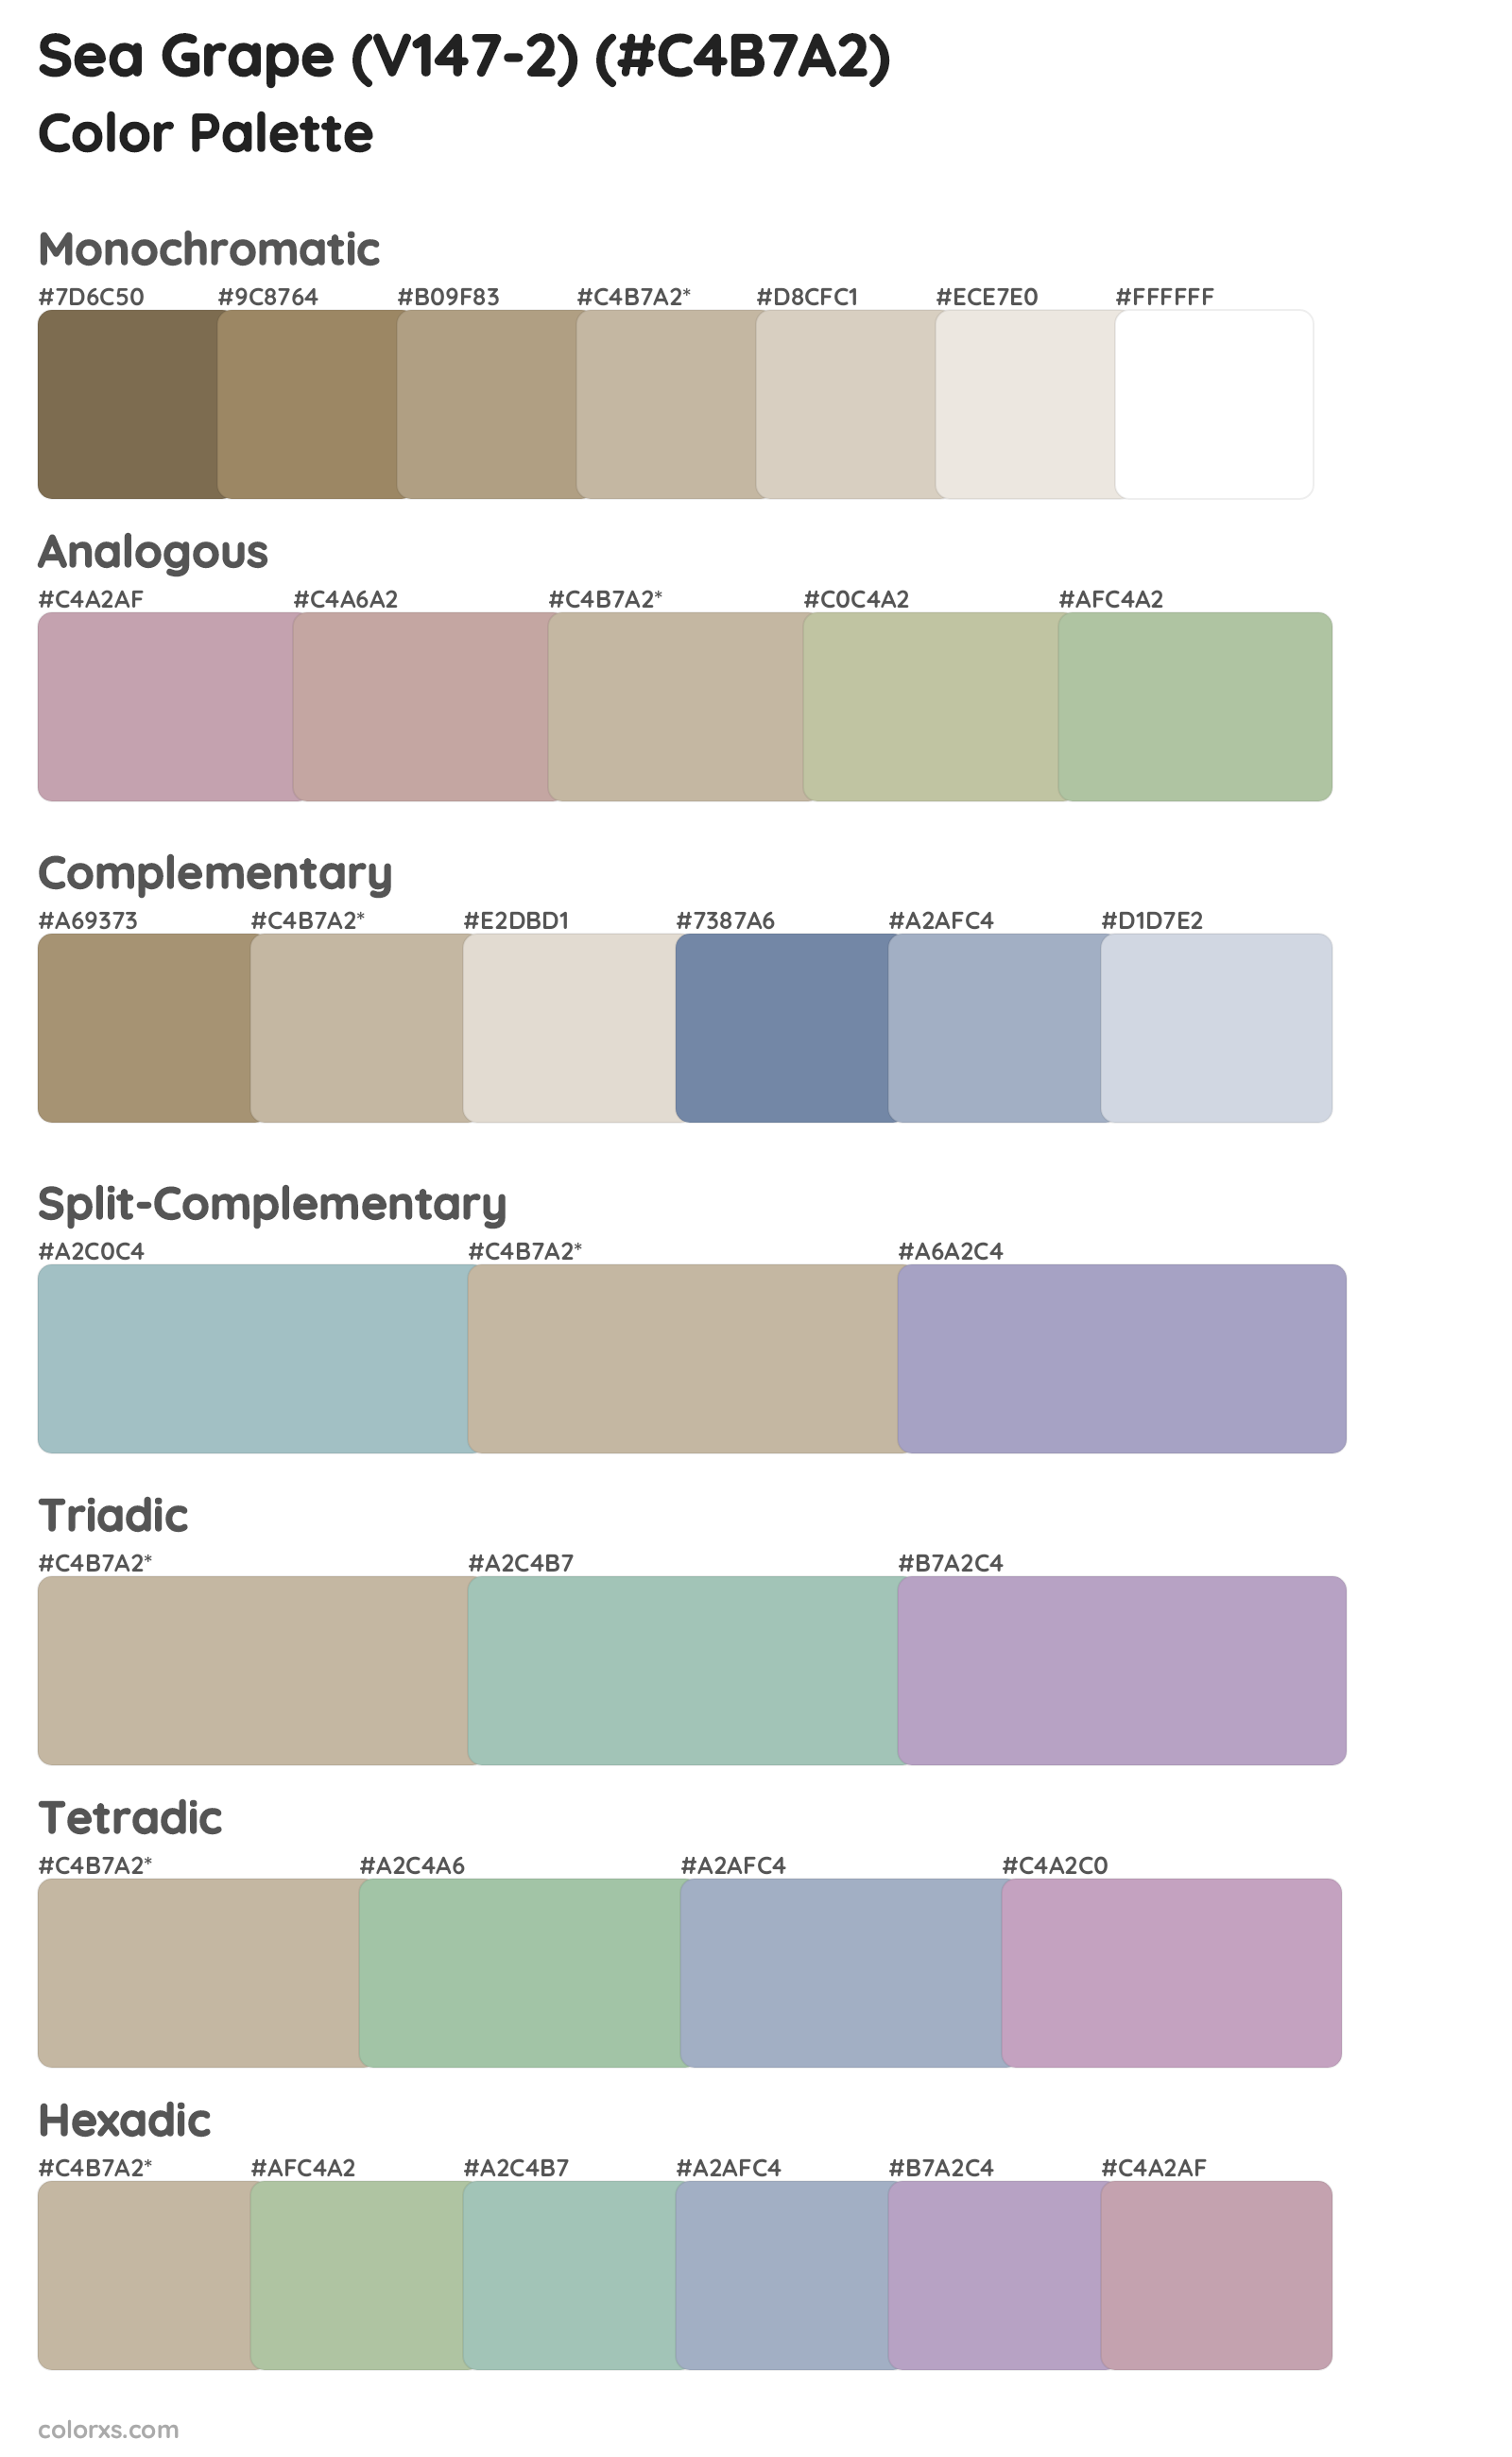 Sea Grape (V147-2) Color Scheme Palettes